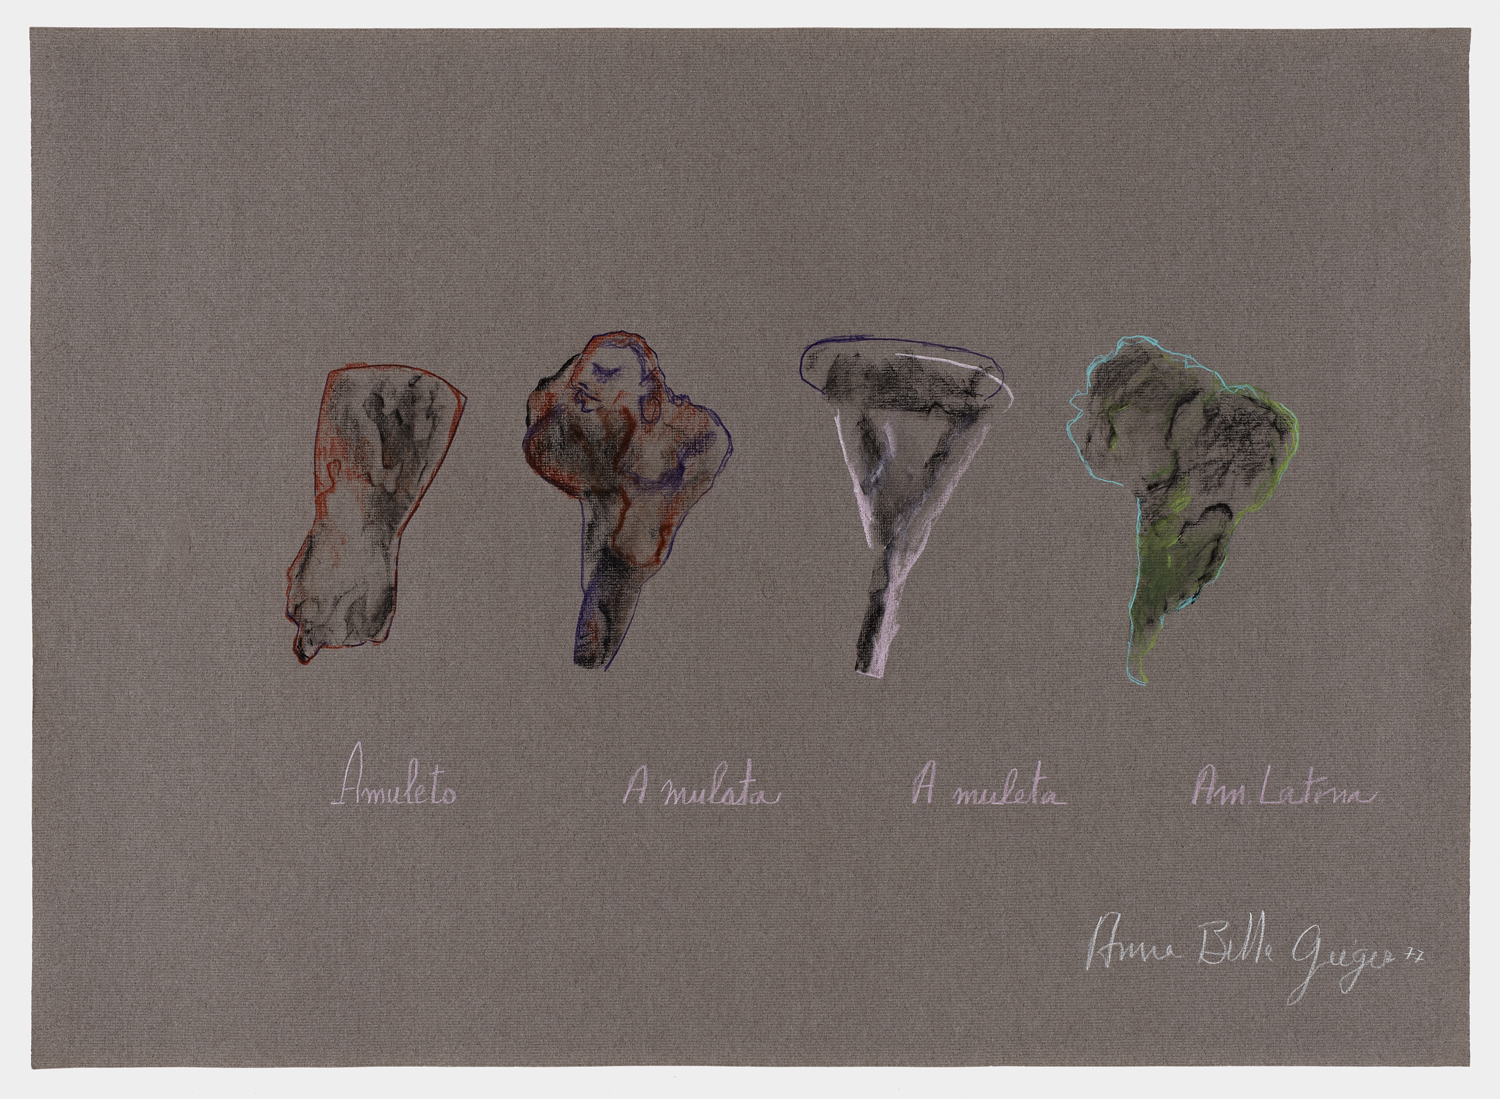 Anna Bella Geiger, Amuleto, 1977, grafito y lápices de colores sobre papel, 48 x 66.3 cm. Cortesía: Henrique Faria Fine Art